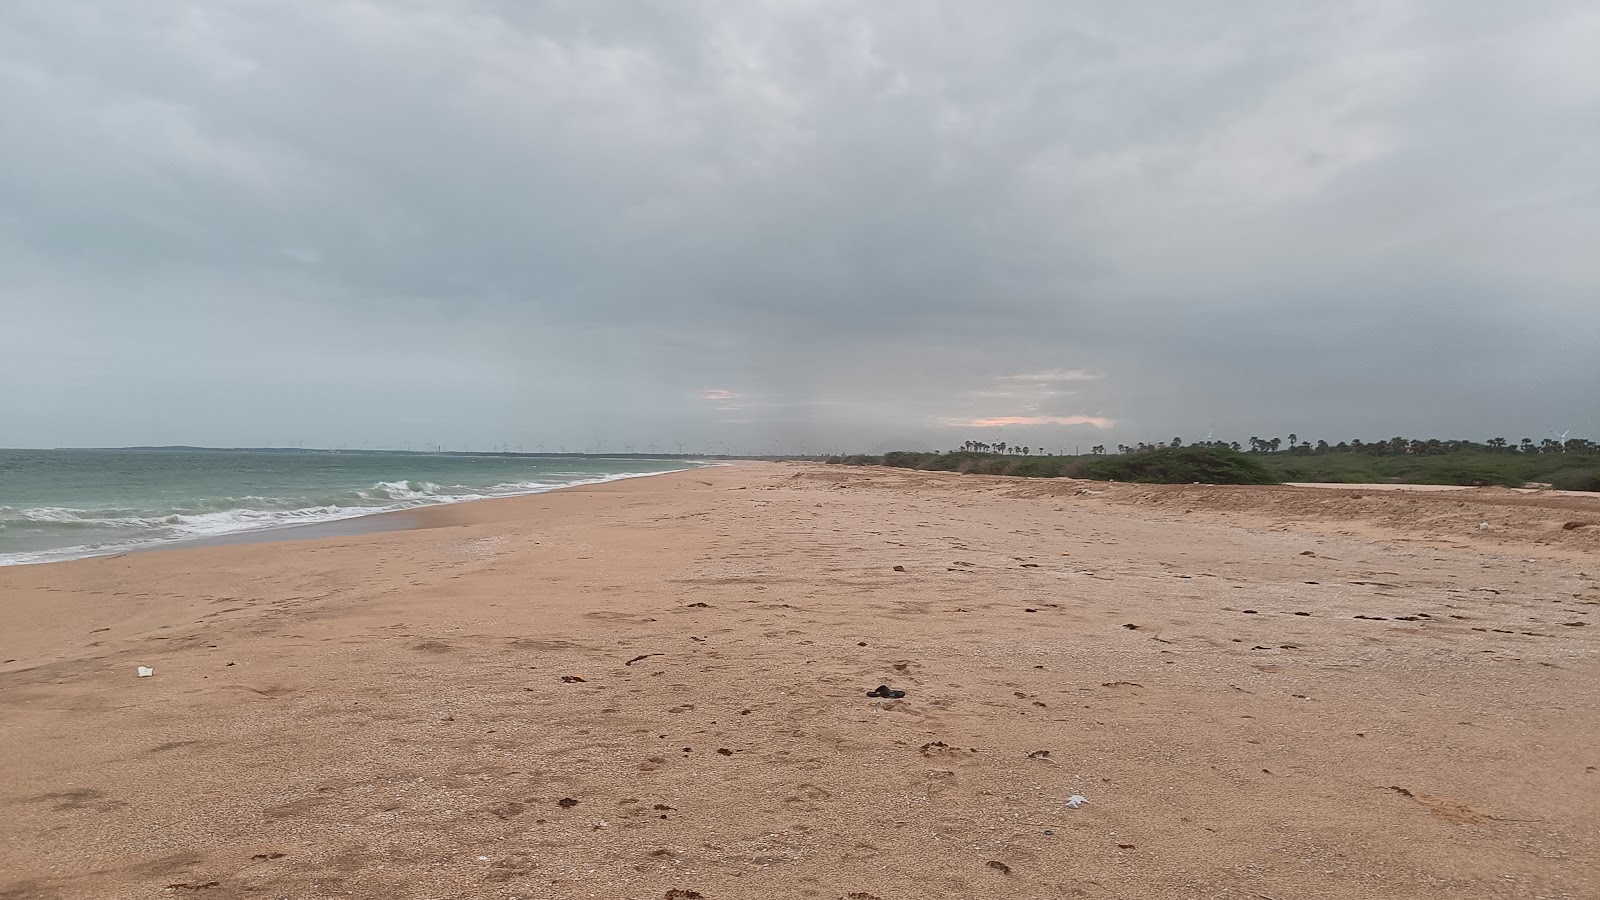 Navaladi Beach'in fotoğrafı parlak kum yüzey ile